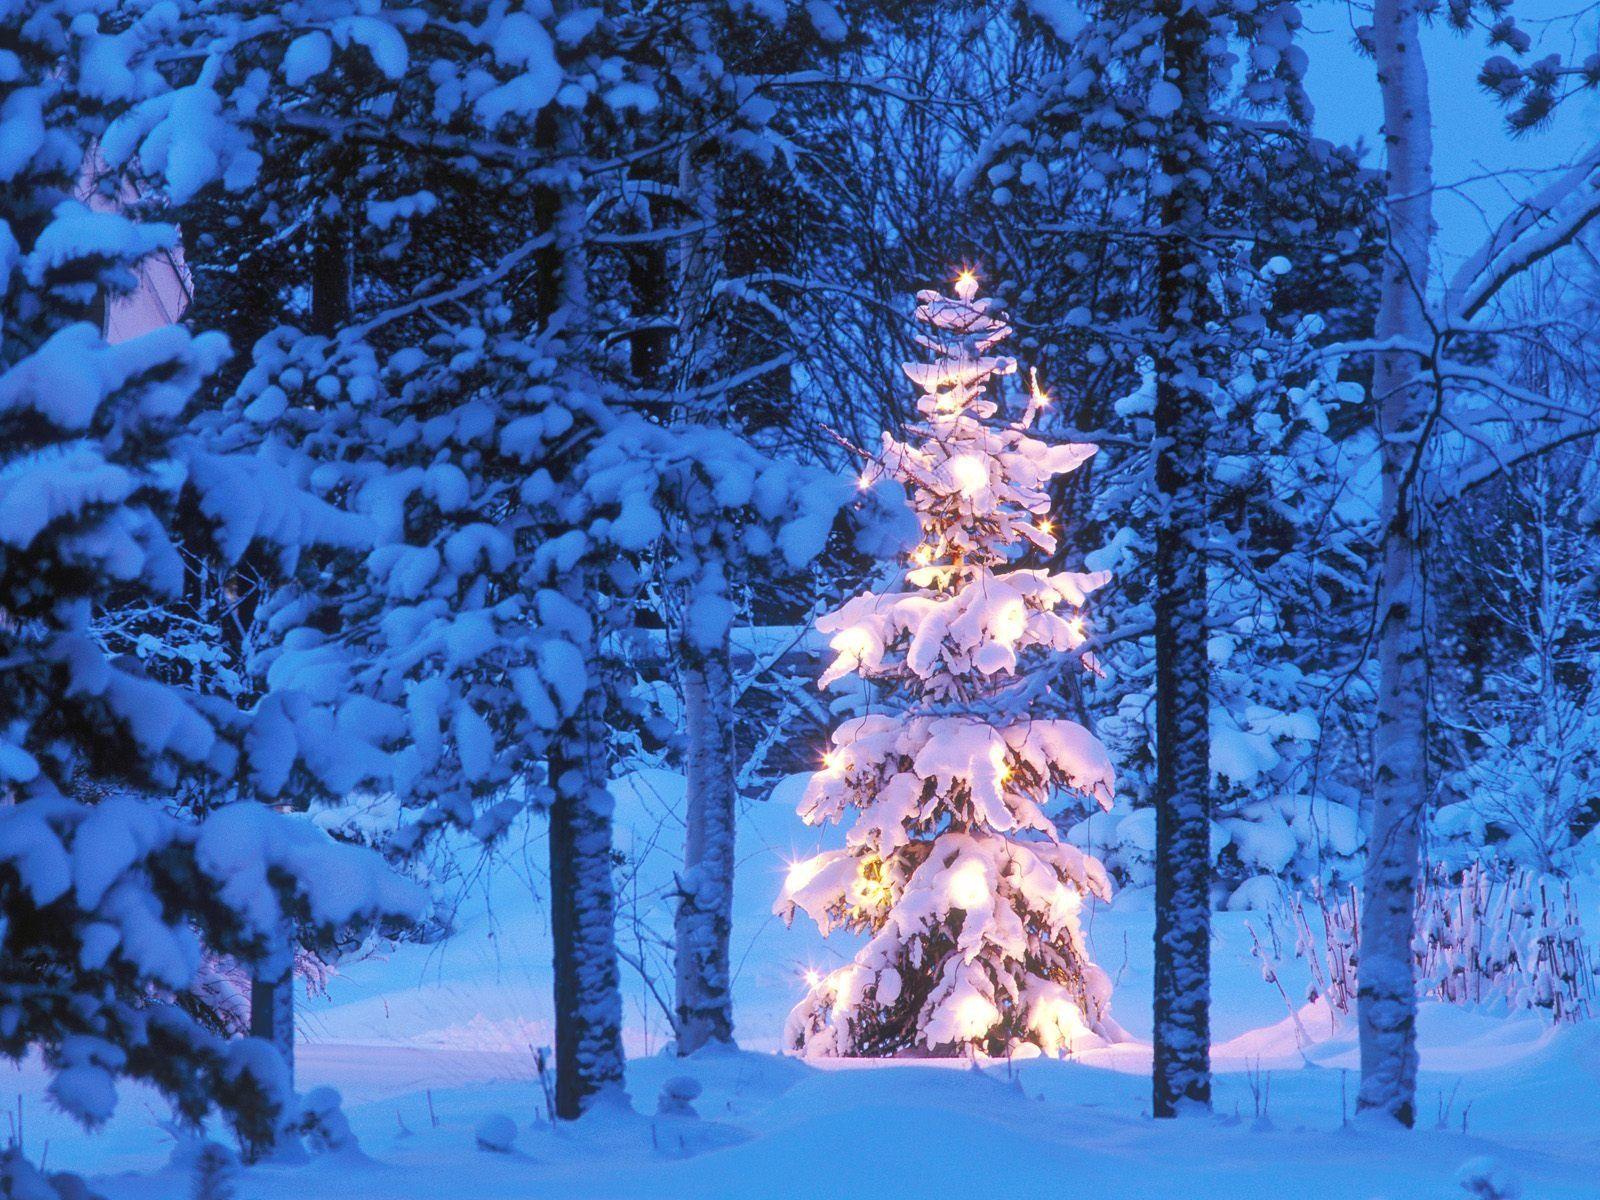 Christmas Tree Snow Wallpapers - Top Free Christmas Tree Snow ...